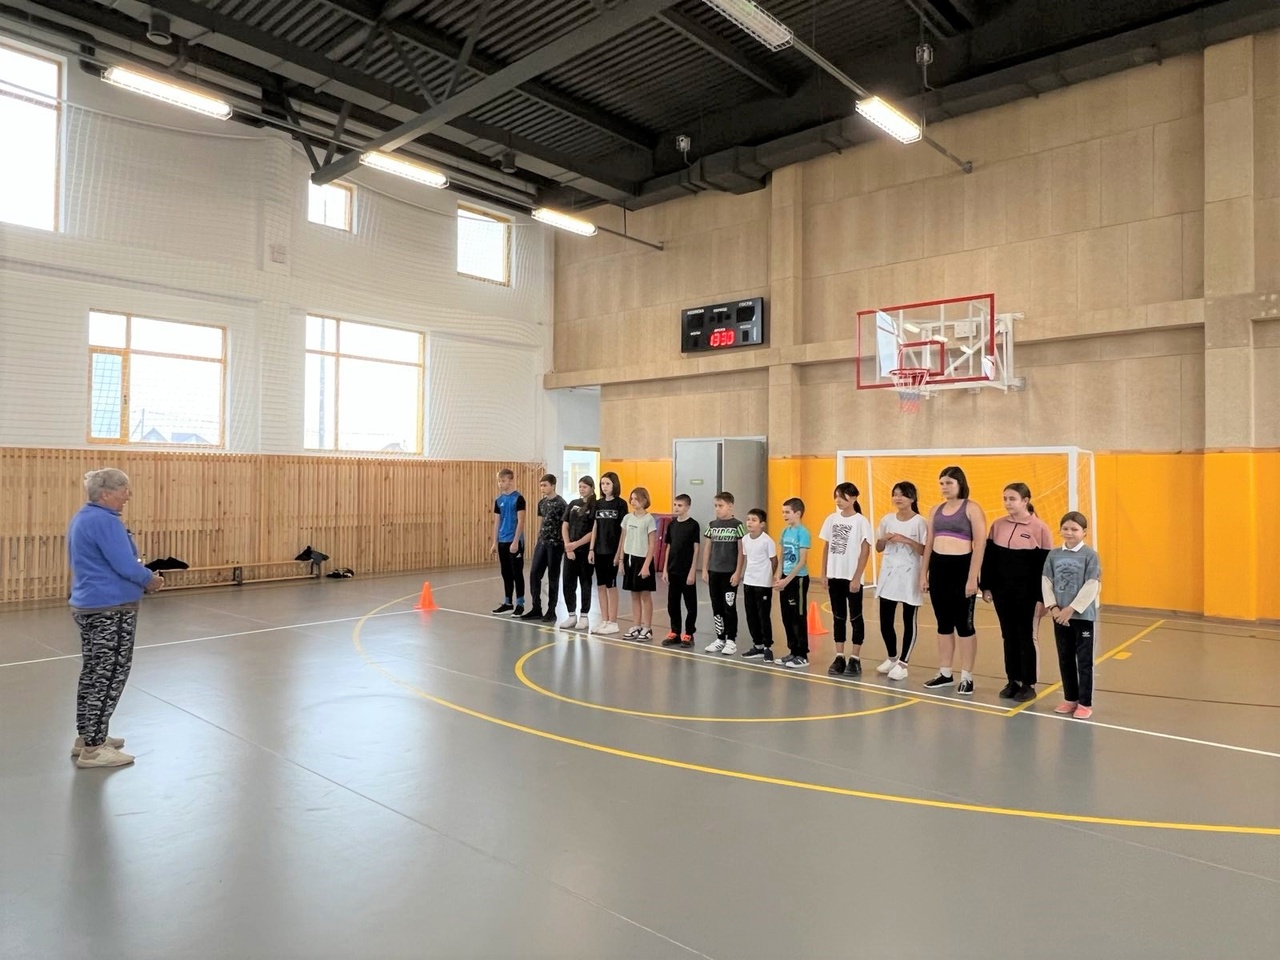 Открытые учебно-тренировочные занятия по лёгкой атлетике и художественной гимнастике прошли в Белгородском районе